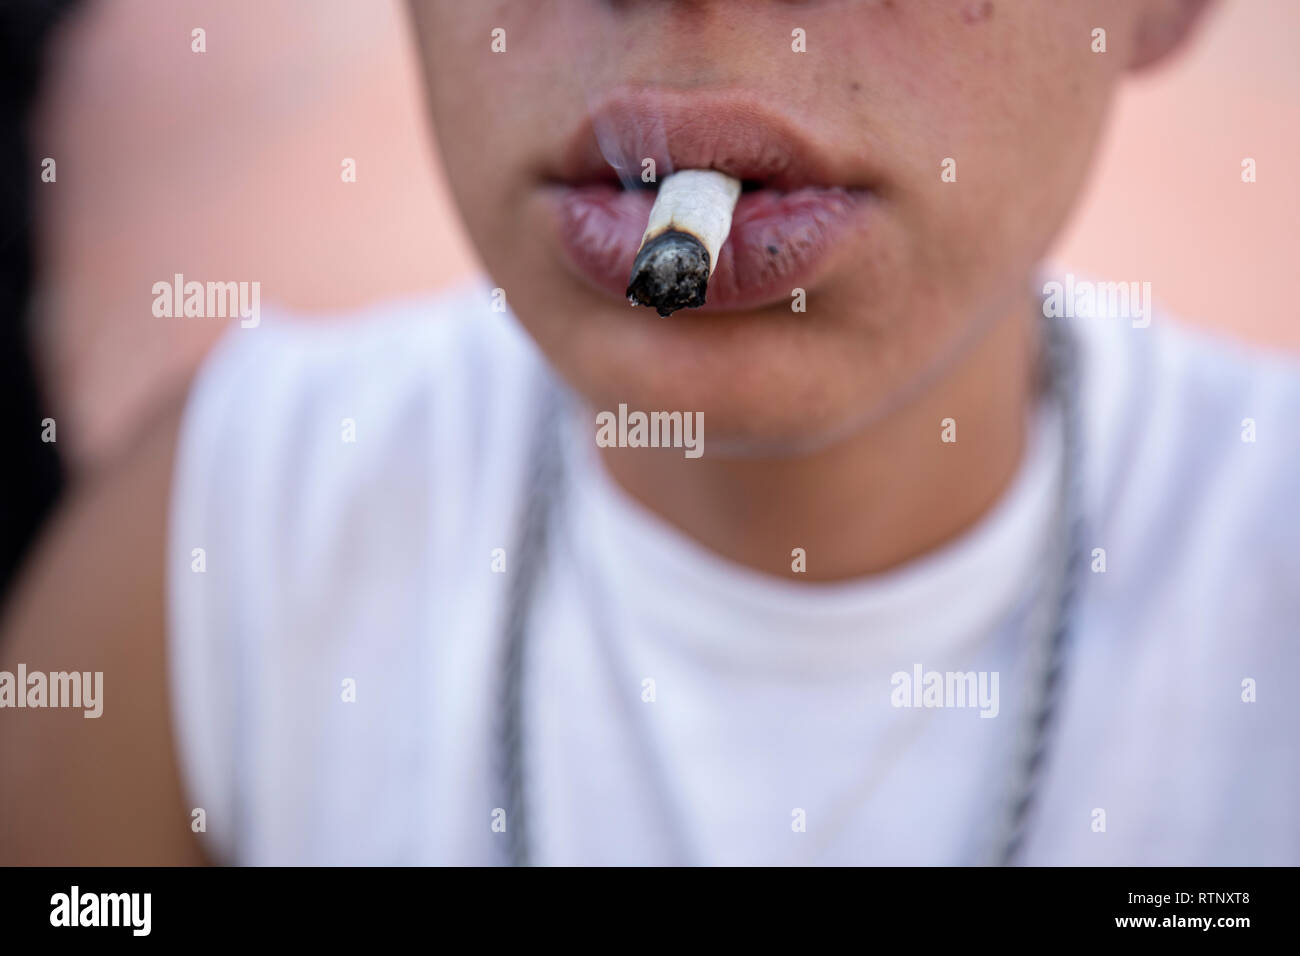 Young man smoking a marijuana cigar Stock Photo